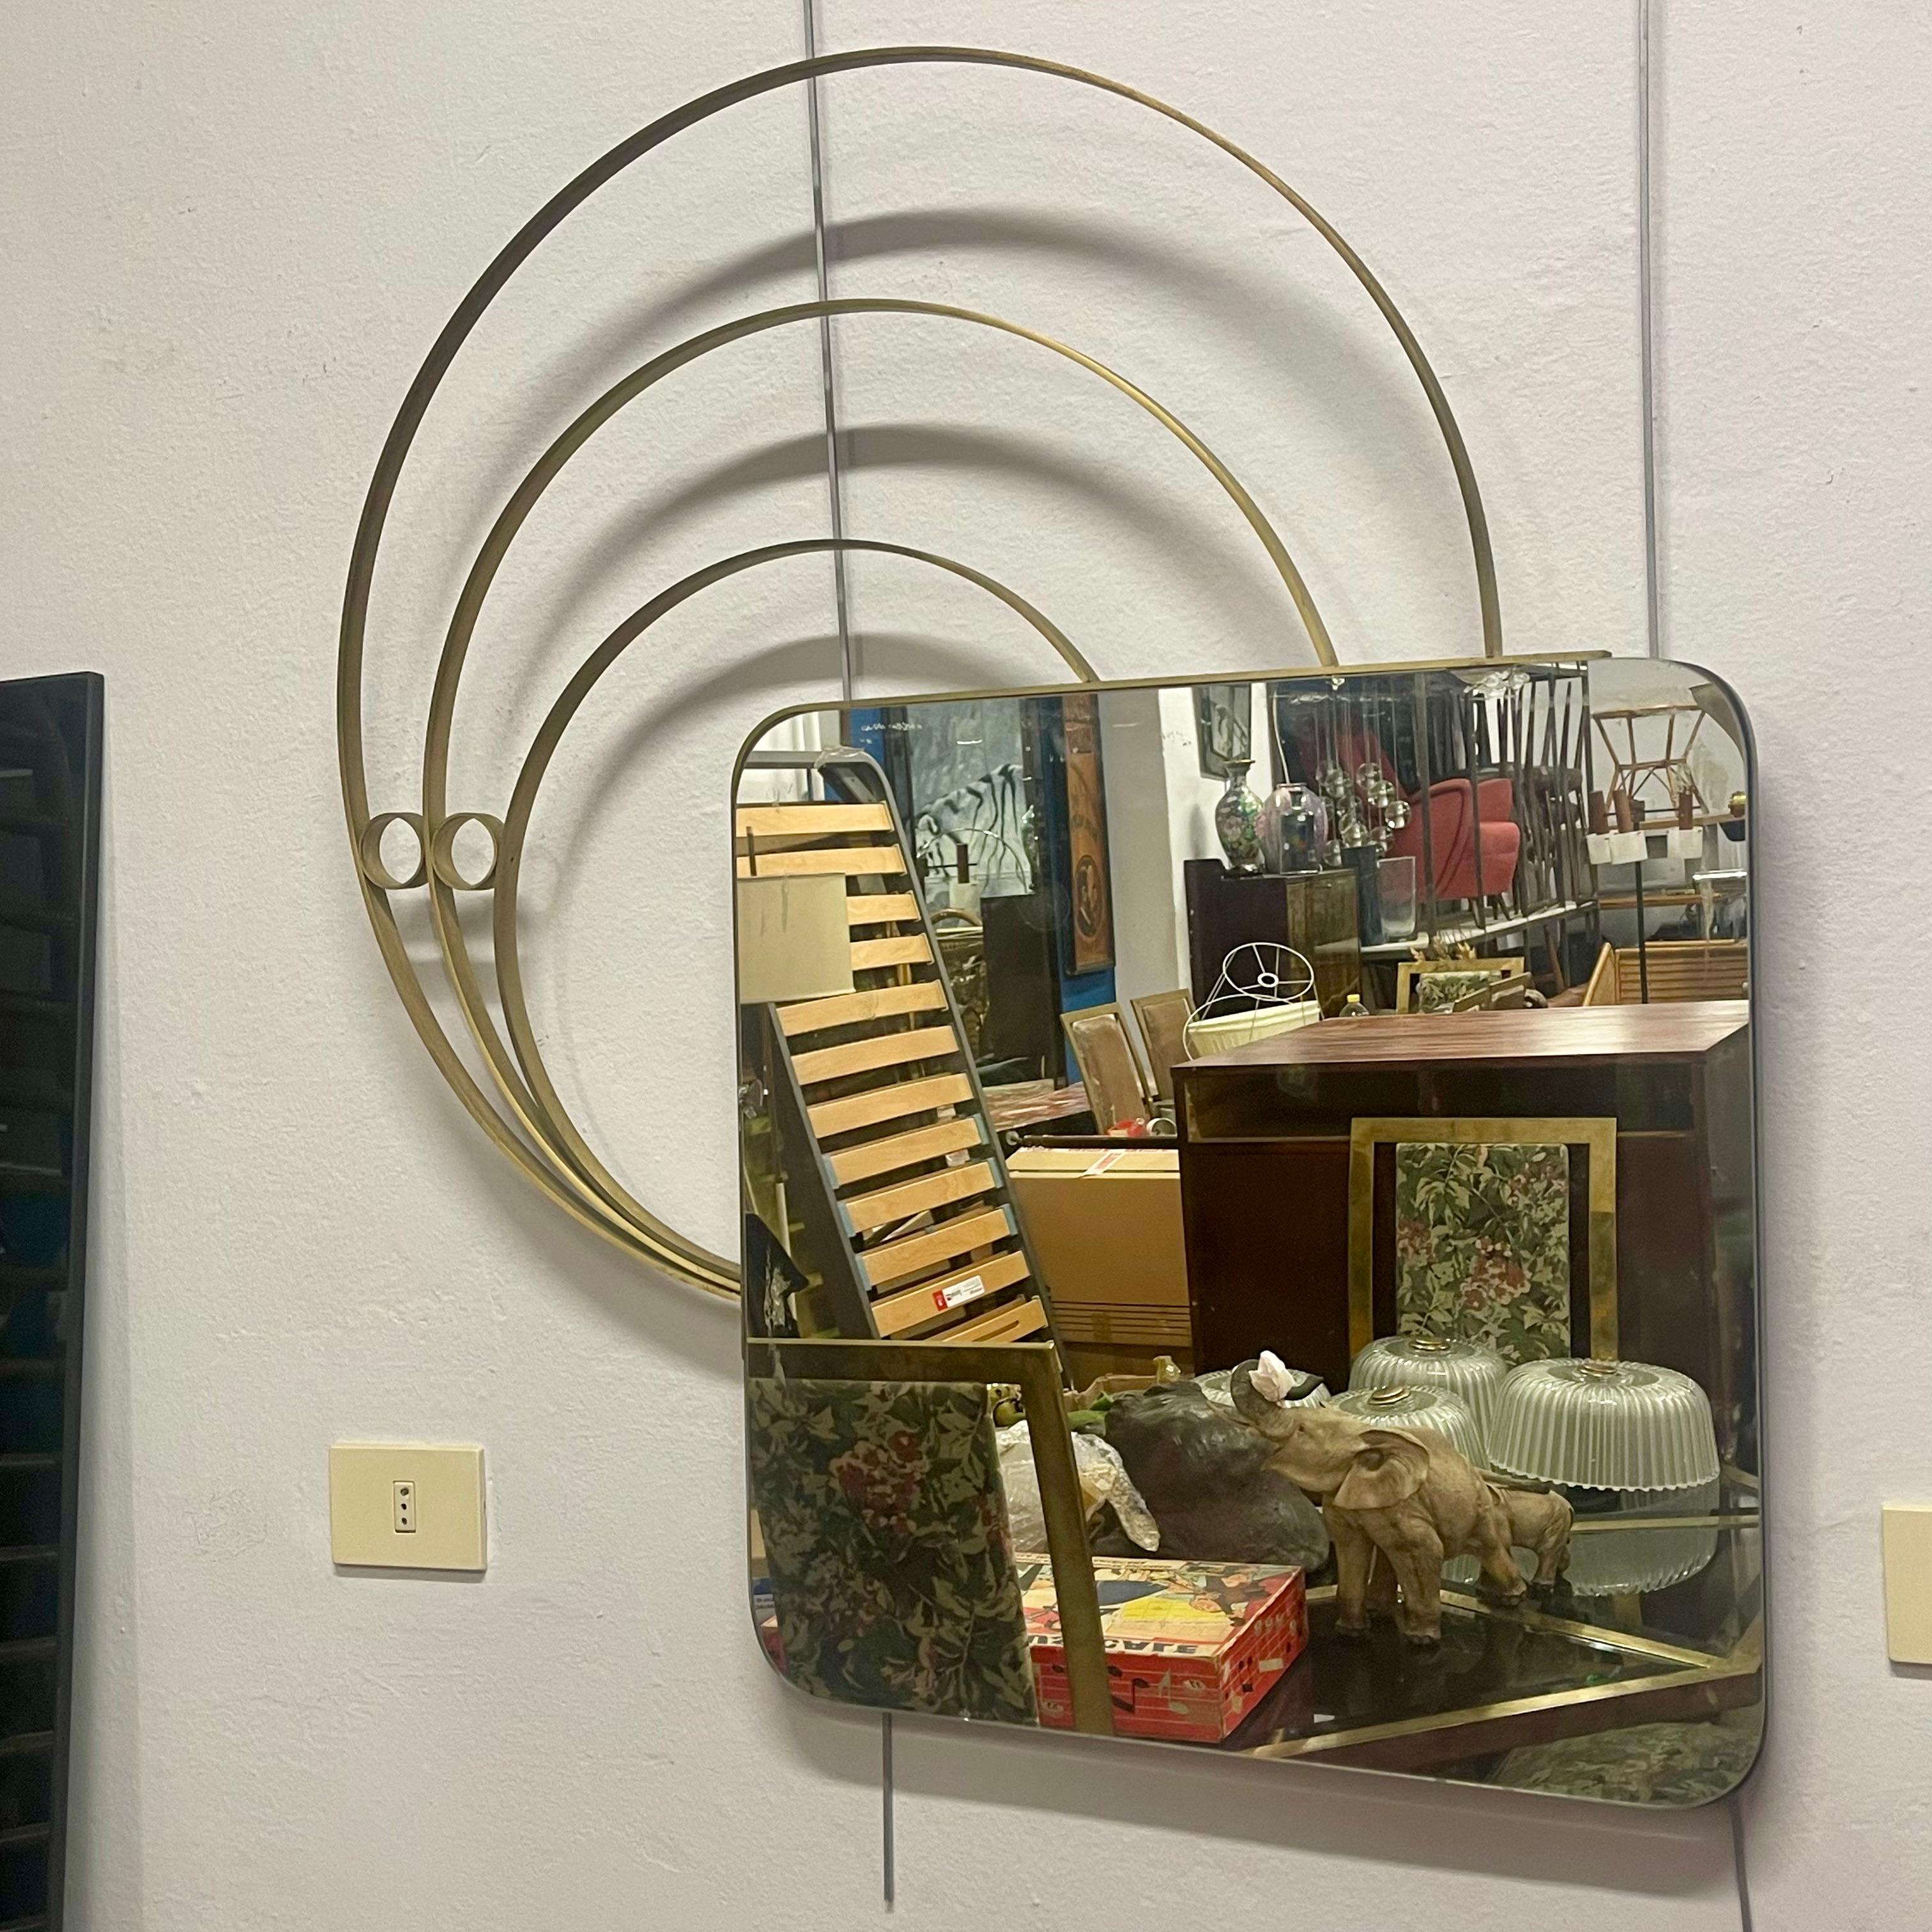 ADALBERTO CARACENI Specchio per Modernindustria anni '70 Ottone, vetro specchiato. 
L'azienda produceva mobili salotti e complementi d'arredo e si trovava a Giussano (MB).
Lo specchio faceva parte della linea Katline. 
